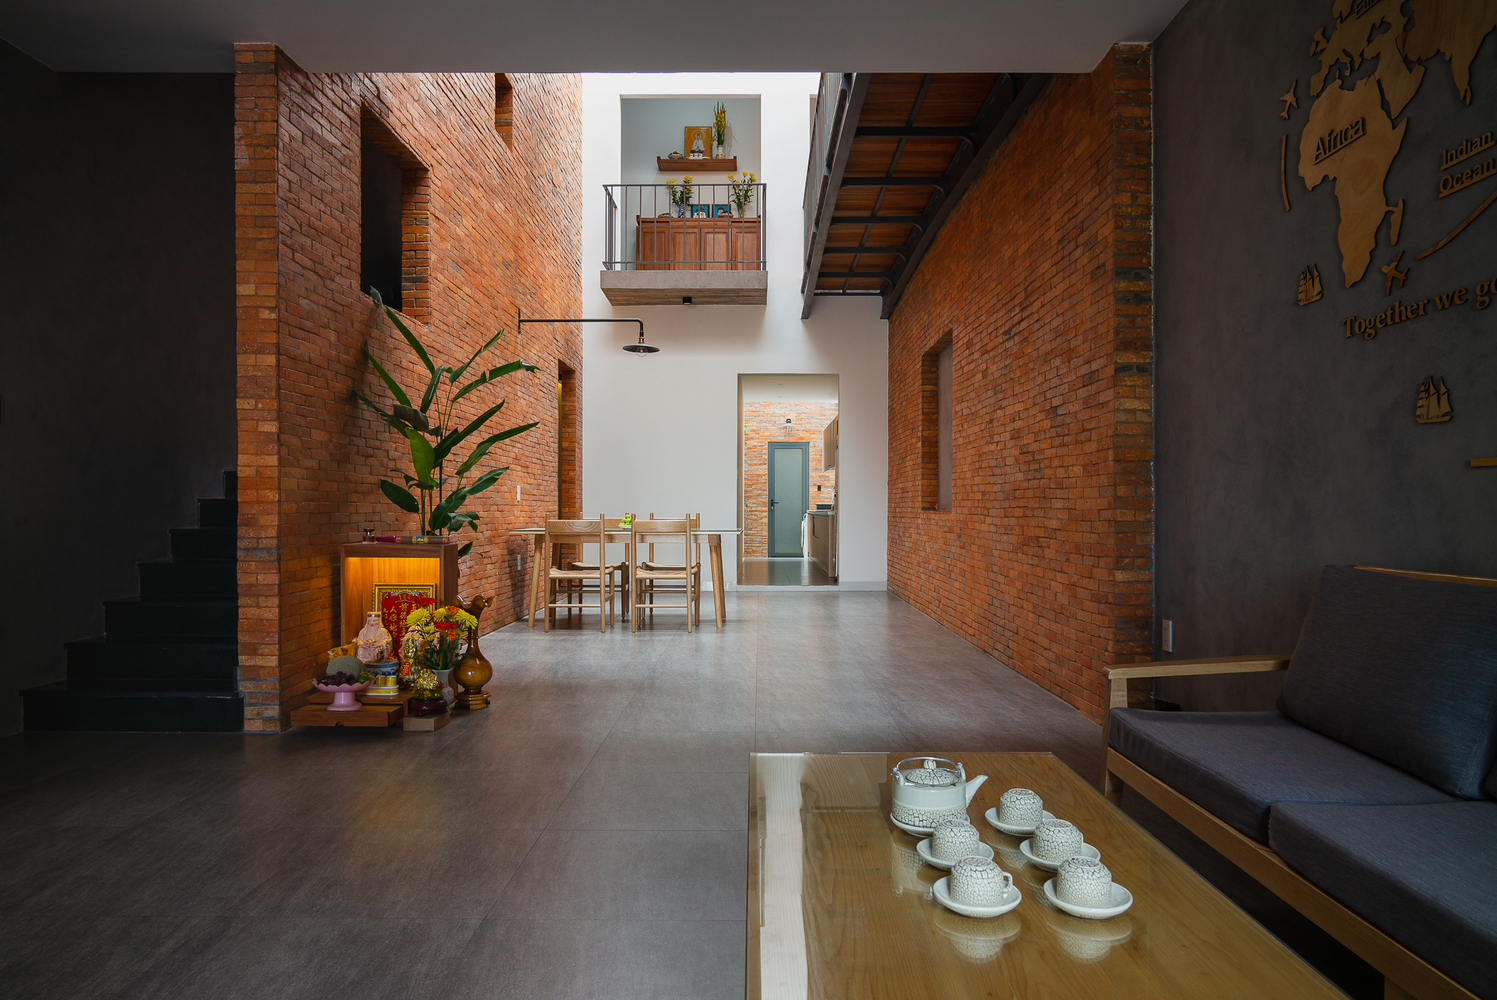 Không gian phòng khách với bộ bàn ghế tối giản, thiết kế liên thông với phòng ăn và phân tách bằng sự khác biệt của vật liệu ốp tường và bê tông - gạch thô.